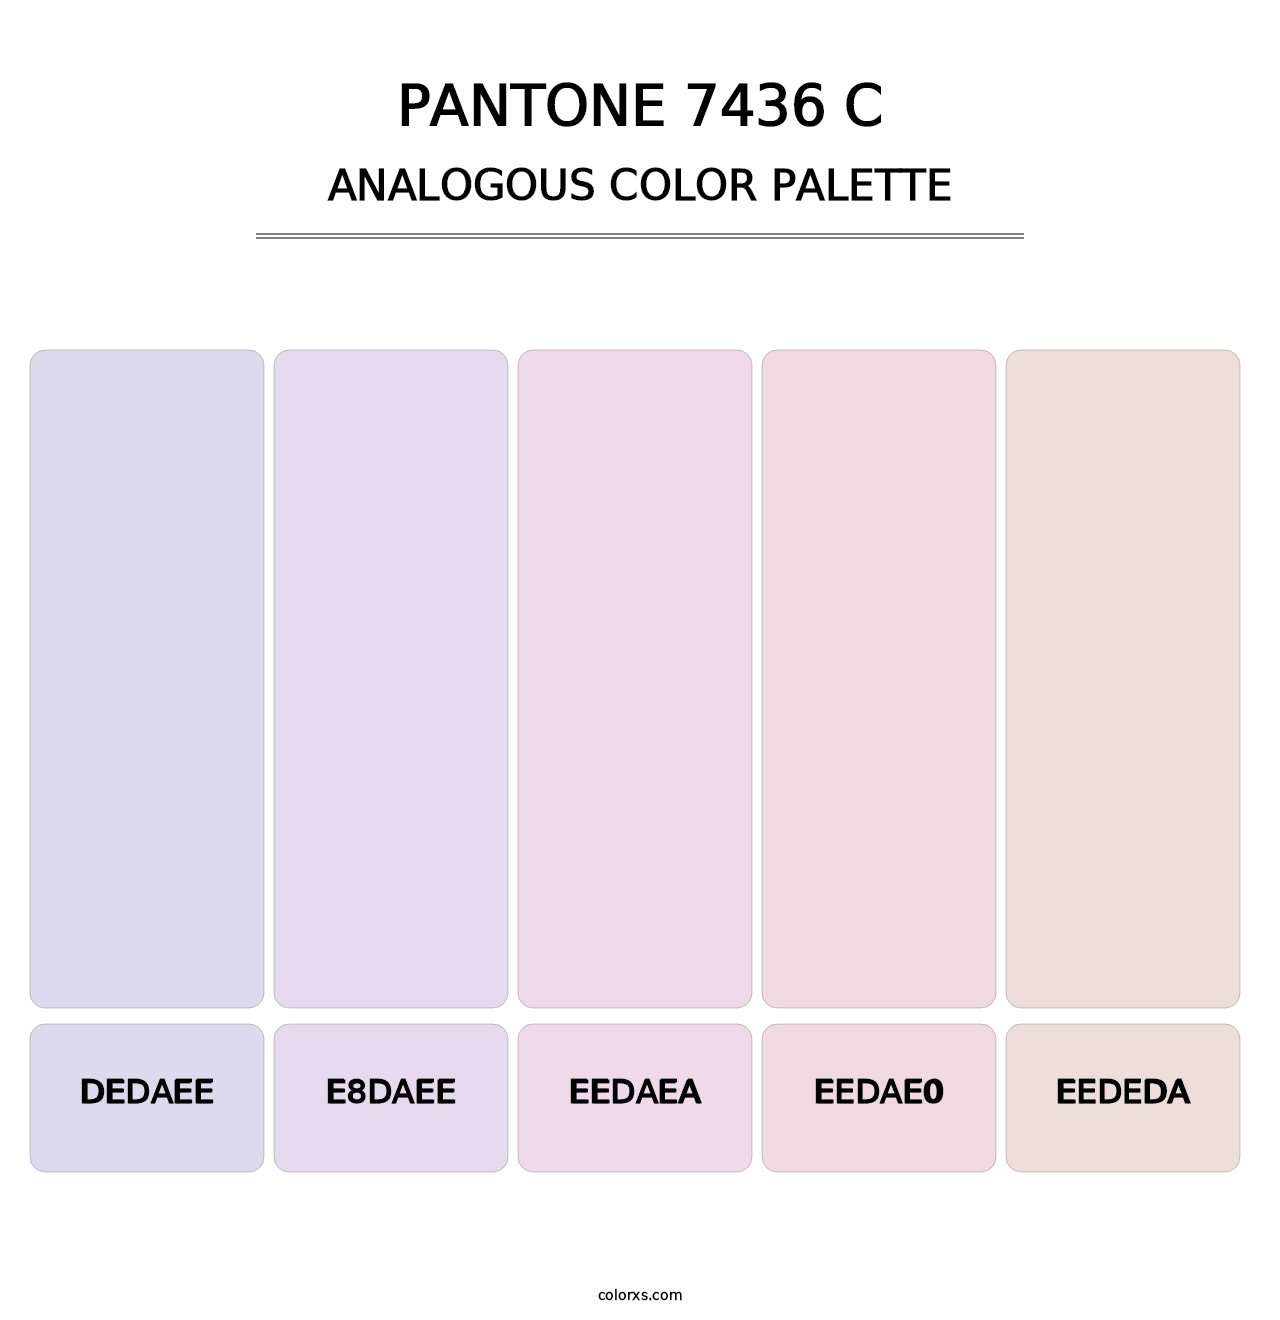 PANTONE 7436 C - Analogous Color Palette